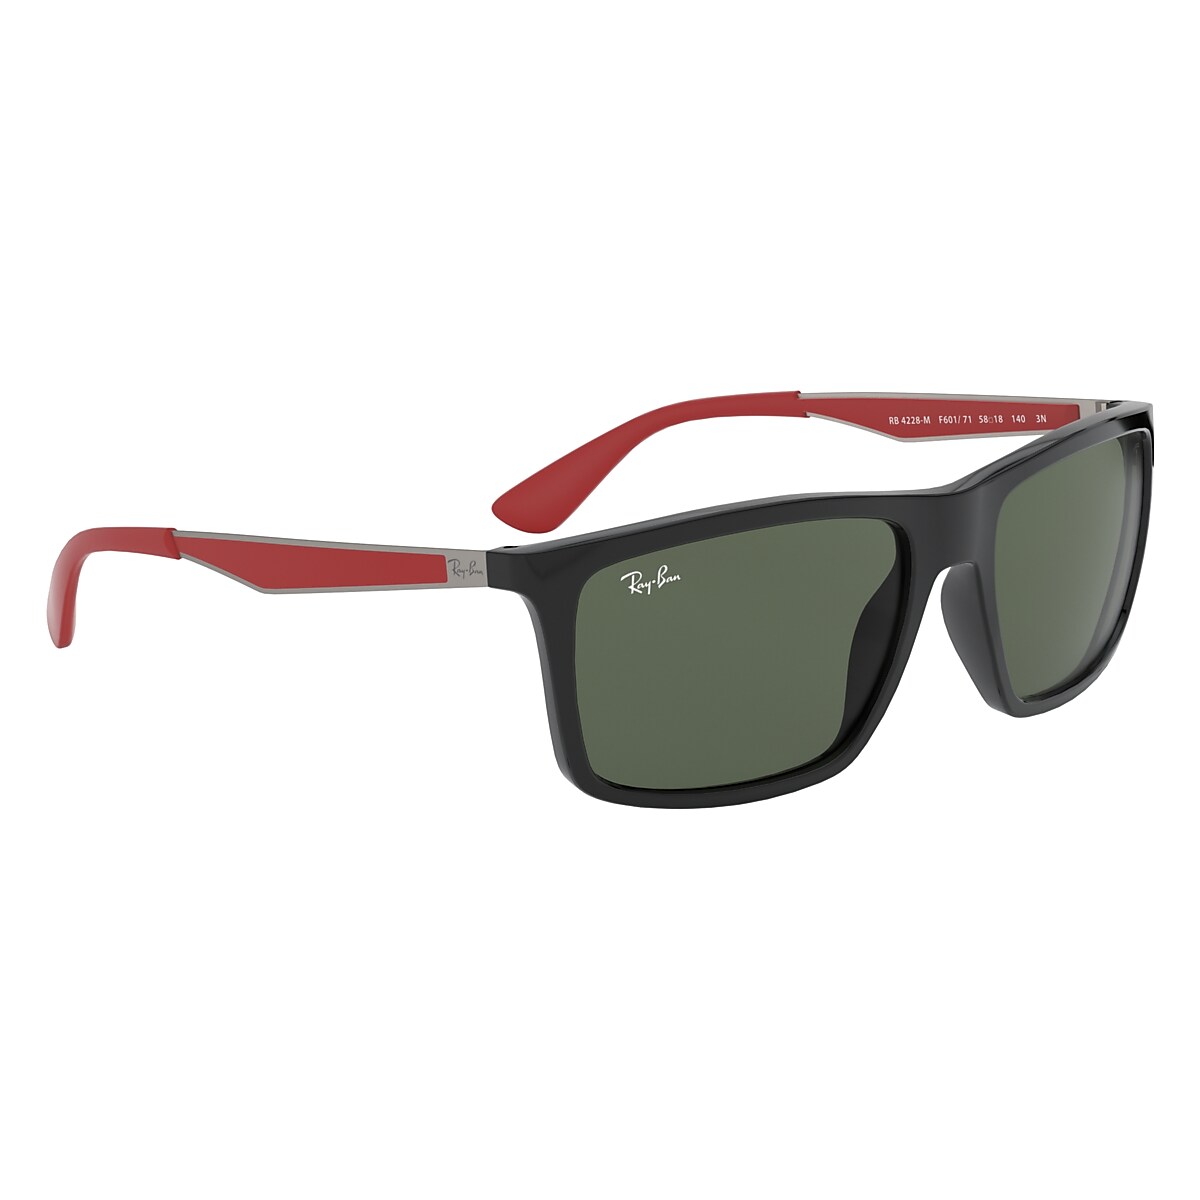 Rb4228m Scuderia Ferrari Collection Sunglasses in Black and Green 